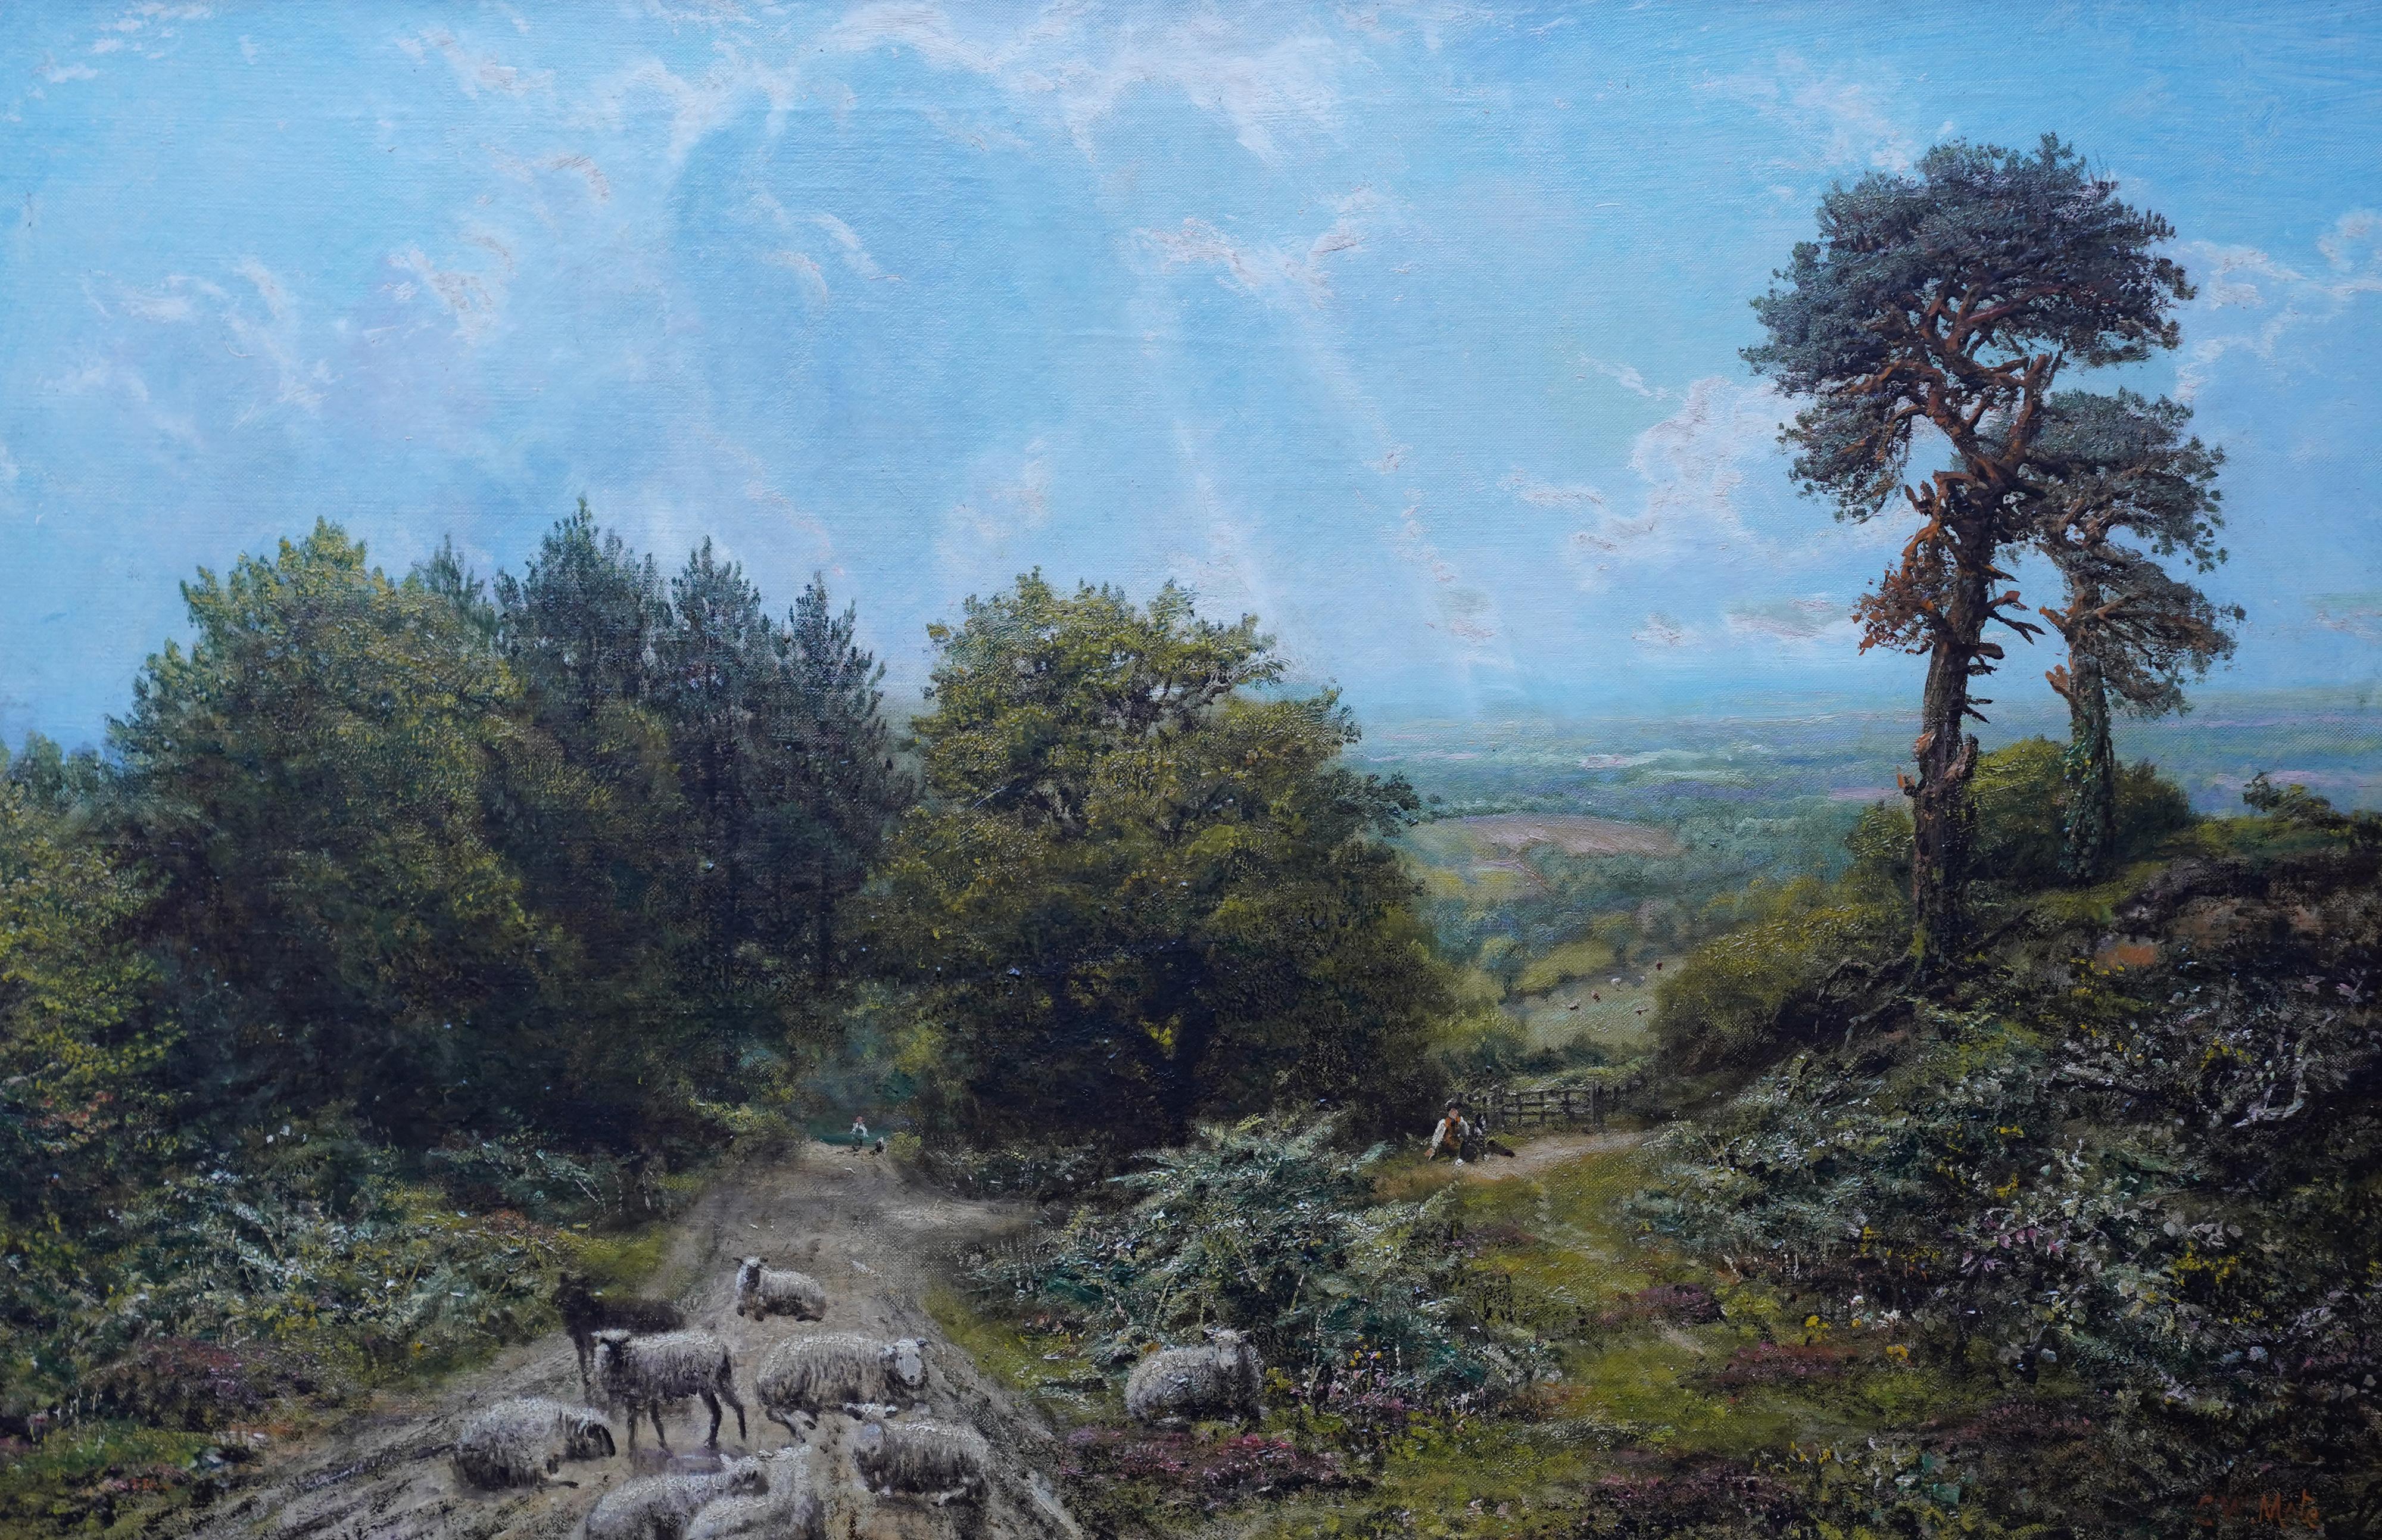 Schafe in einer Landschaft aus Surrey – britisches viktorianisches Ölgemälde in sonniger Landschaft – Painting von George William Mote